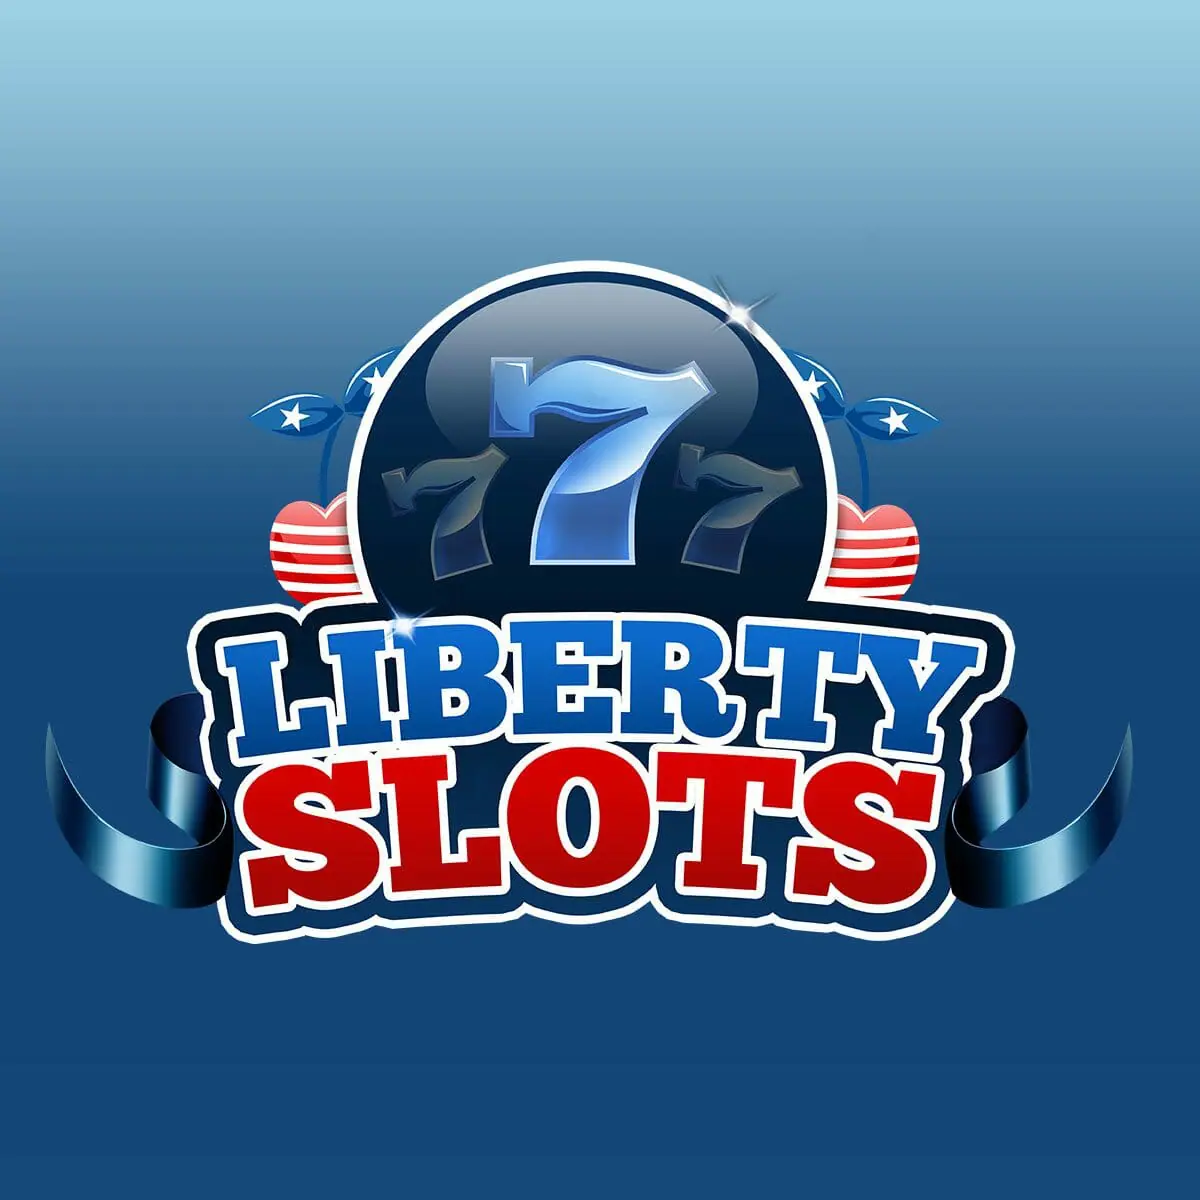 Liberty Slot Casino